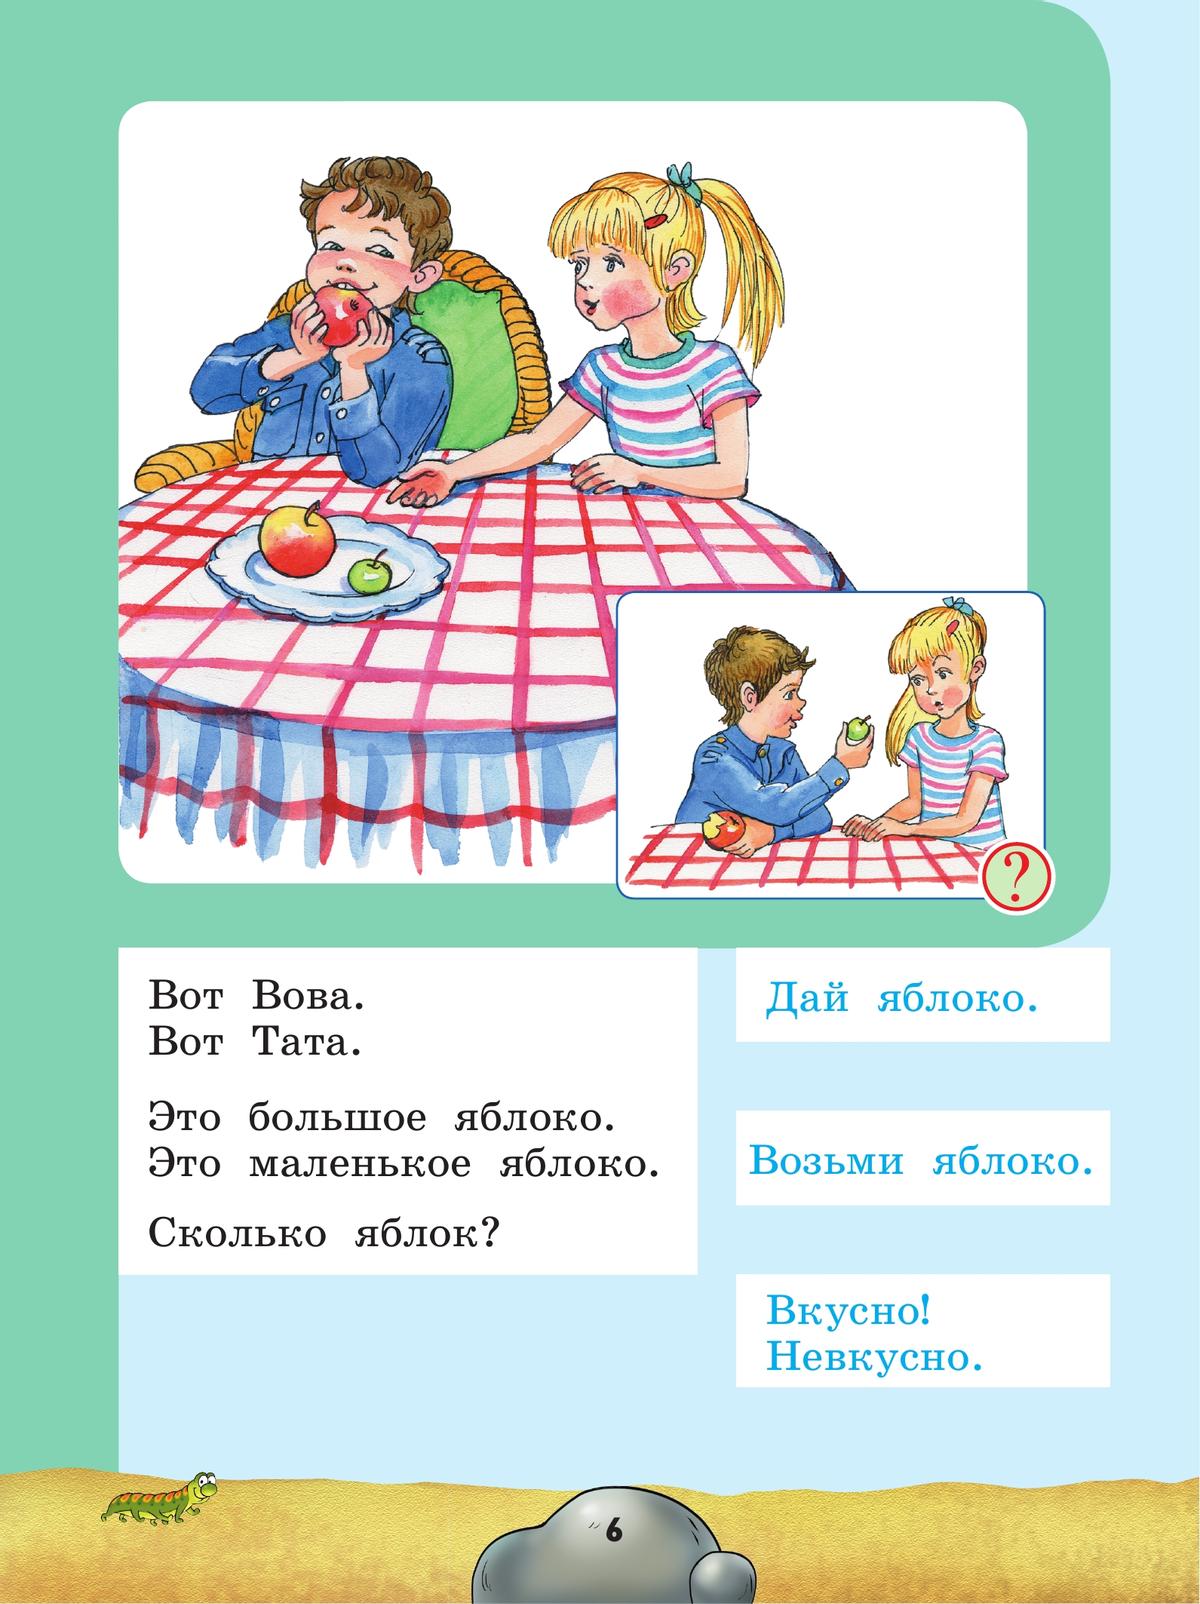 Русский язык. Развитие речи. 1 дополнительный класс. Учебник. (для глухих обучающихся) 8